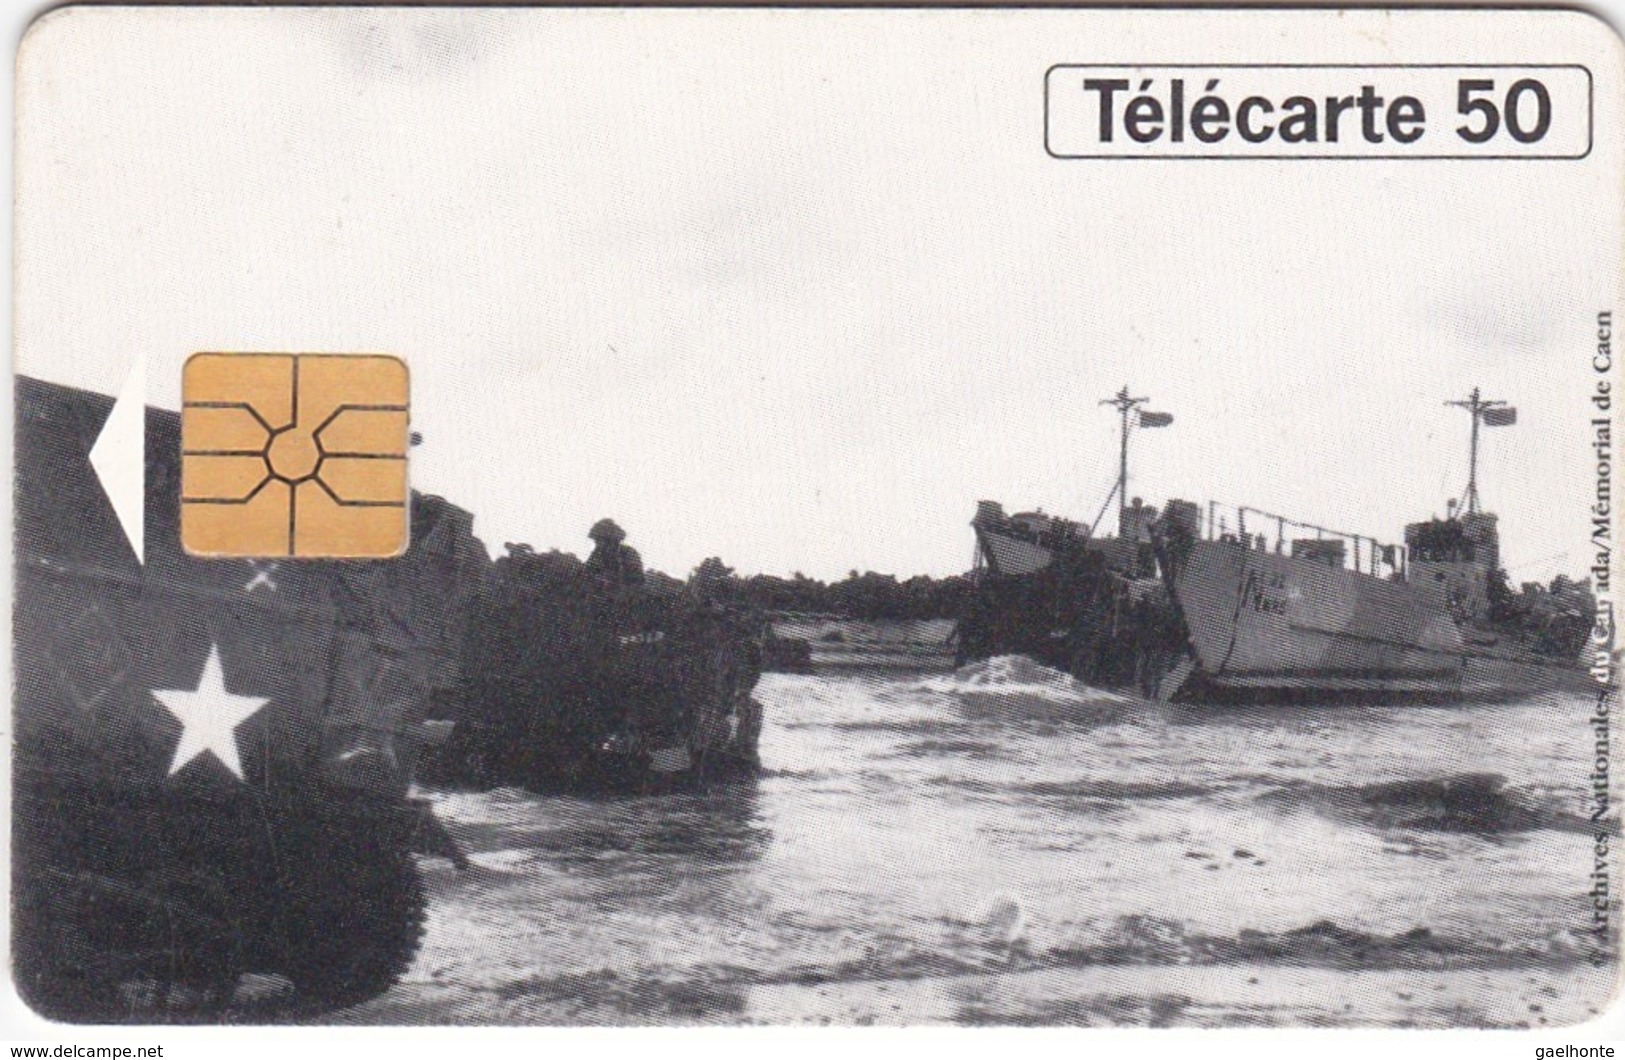 TC120 TÉLÉCARTE 50 UNITÉS - 1944-1994 - 50ème ANNIVERSAIRE DES DEBARQUEMENTS... - BERNIERES SUR MER 06 JUIN 1944 - Armada